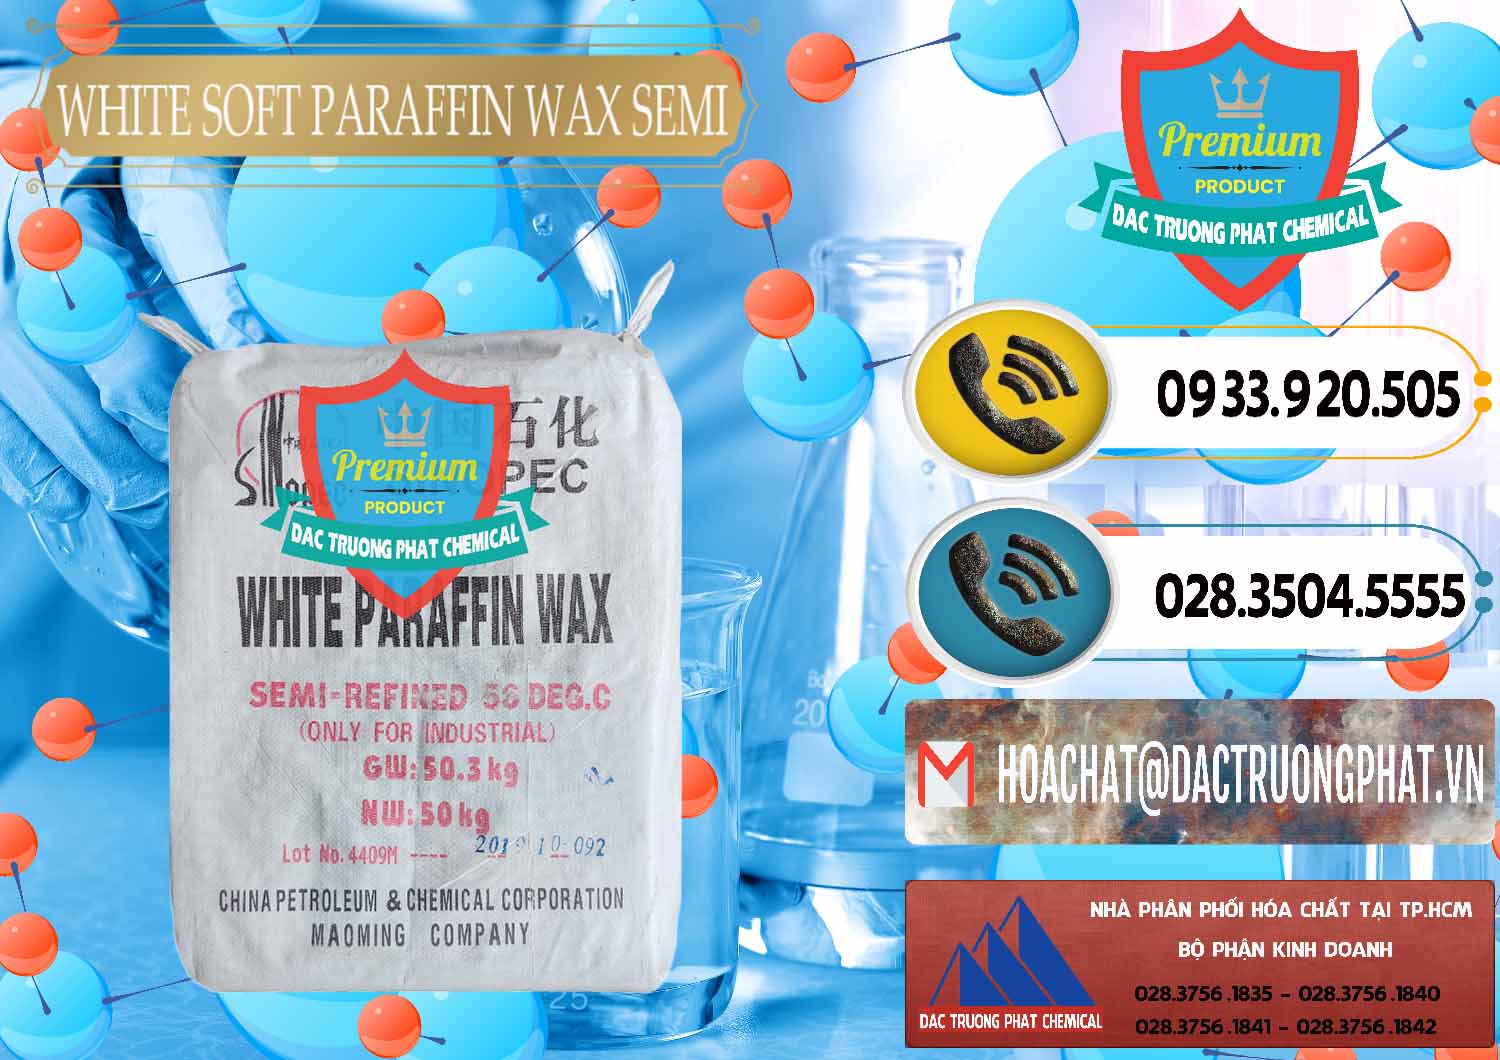 Công ty bán và cung cấp Sáp Paraffin Wax Sinopec Trung Quốc China - 0328 - Cty cung cấp & nhập khẩu hóa chất tại TP.HCM - hoachatdetnhuom.vn